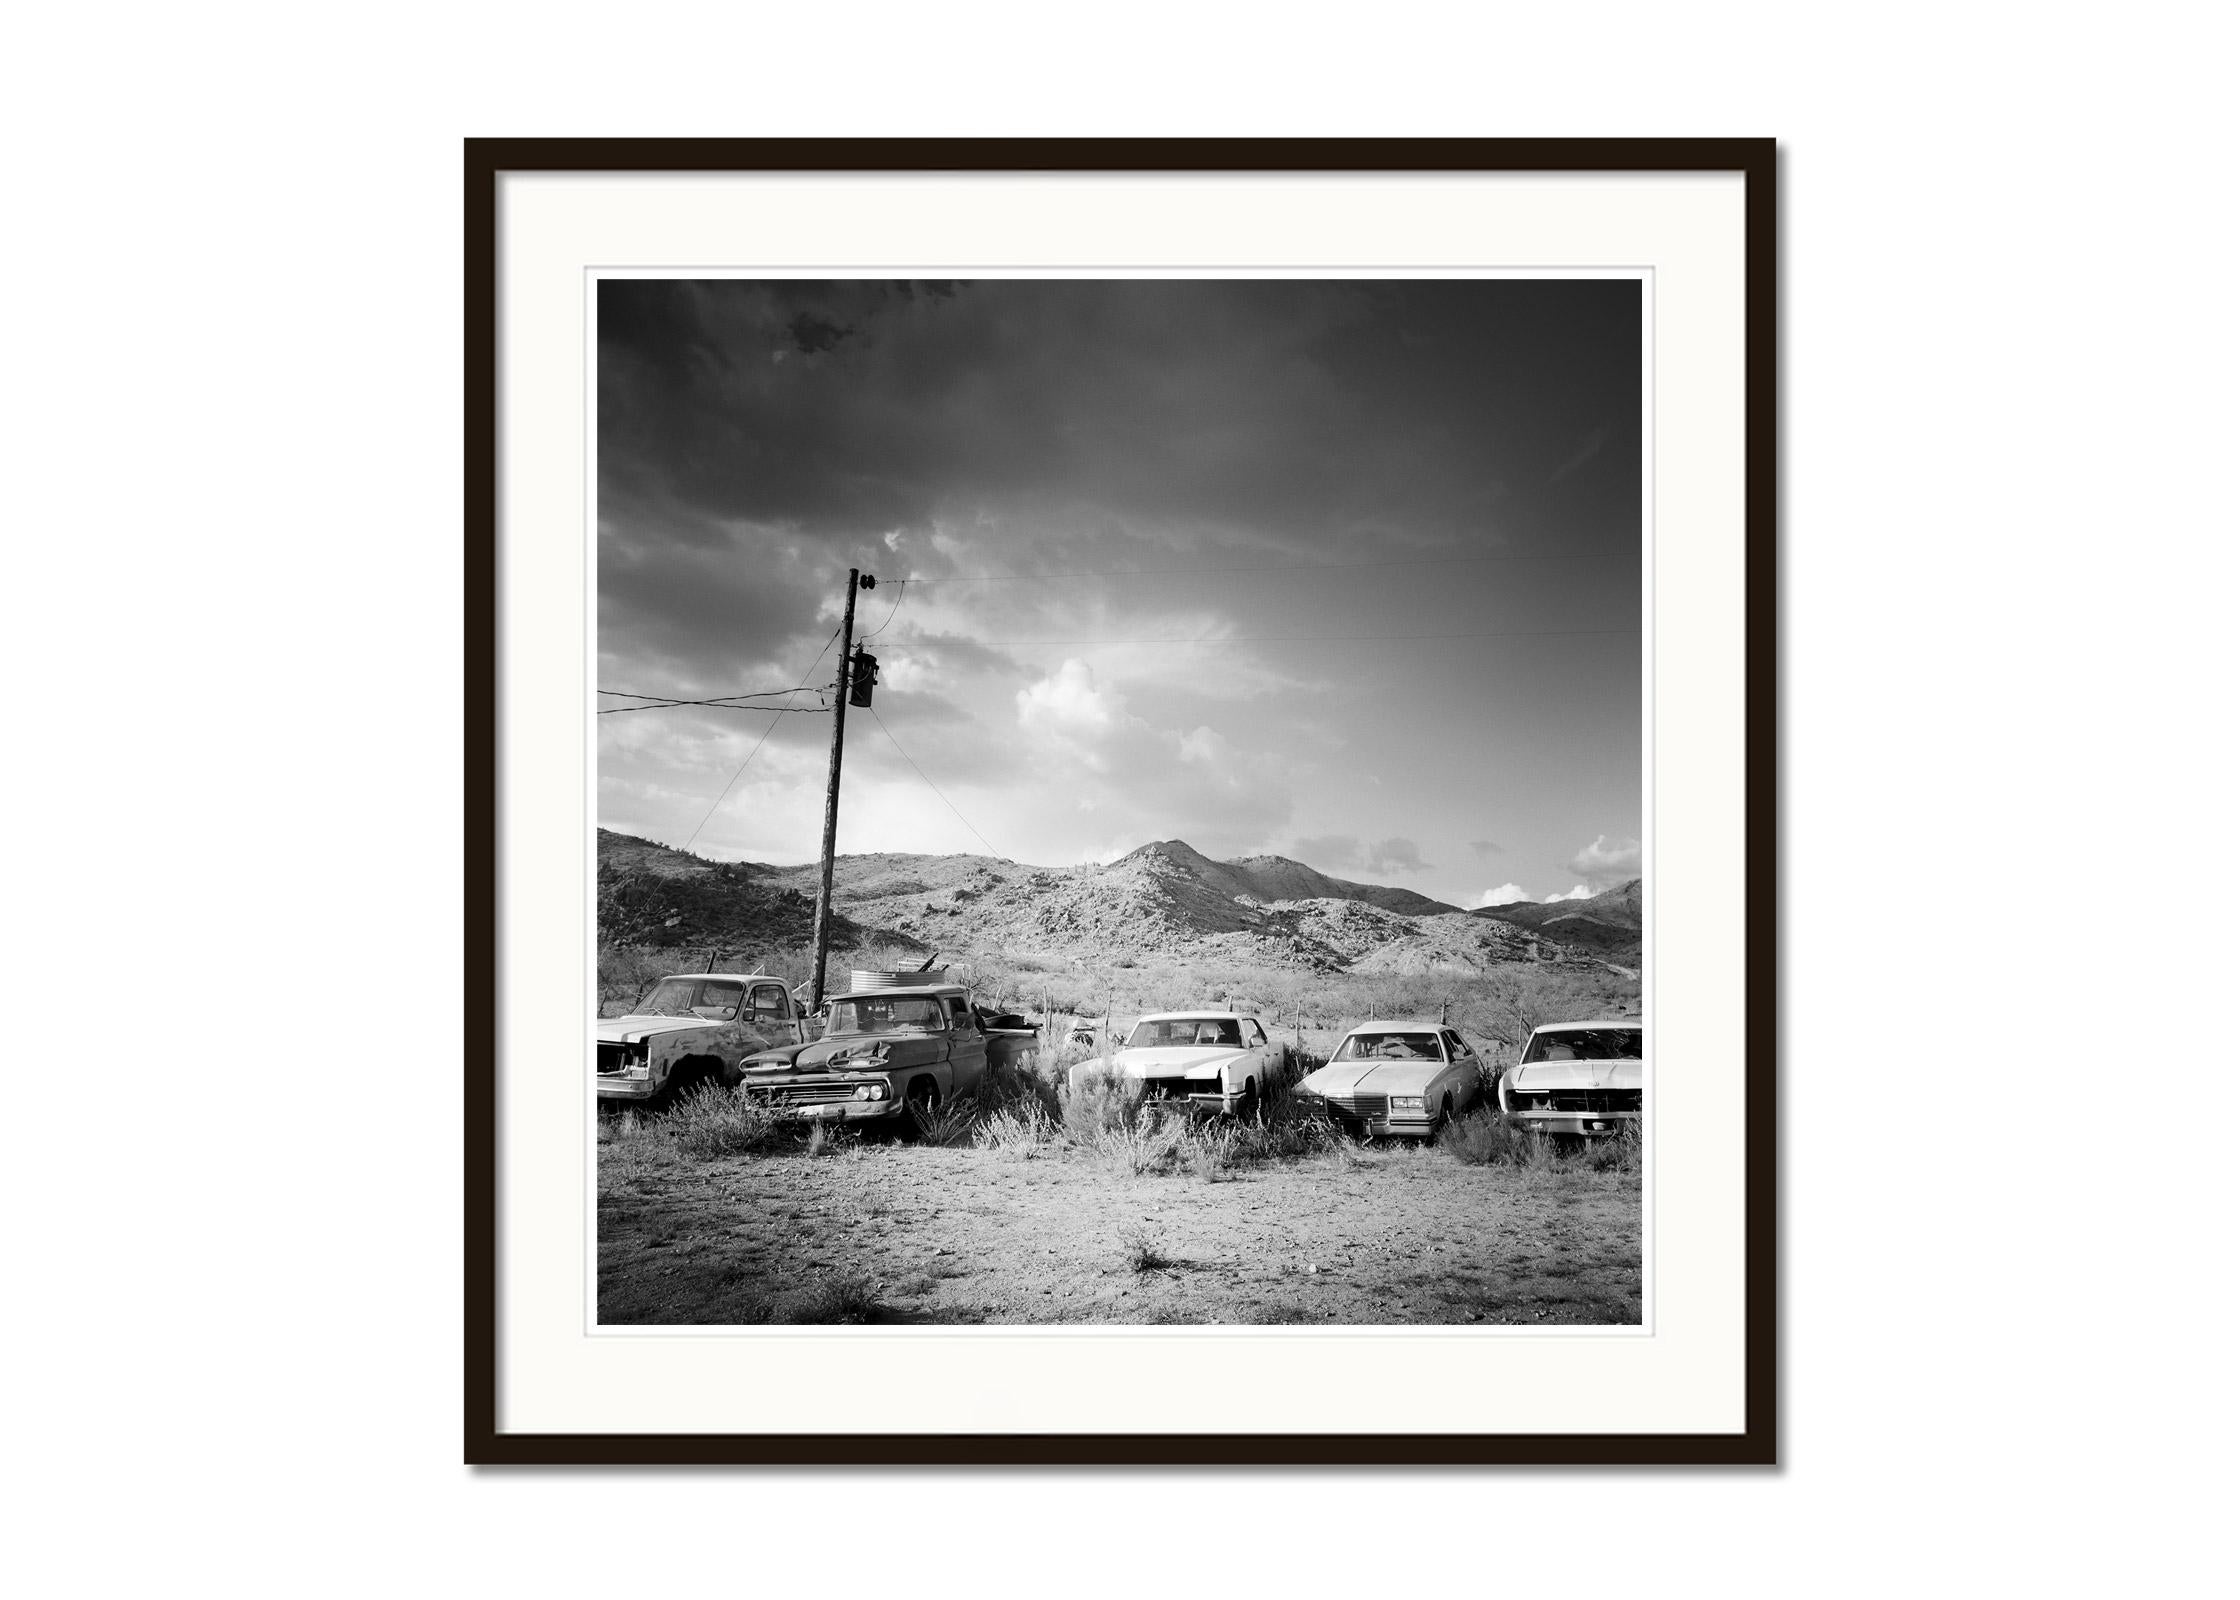 Junkyard, Wüste, Route 66, Arizona, USA, Schwarz-Weiß-Fotografie, Landschaft (Grau), Landscape Photograph, von Gerald Berghammer